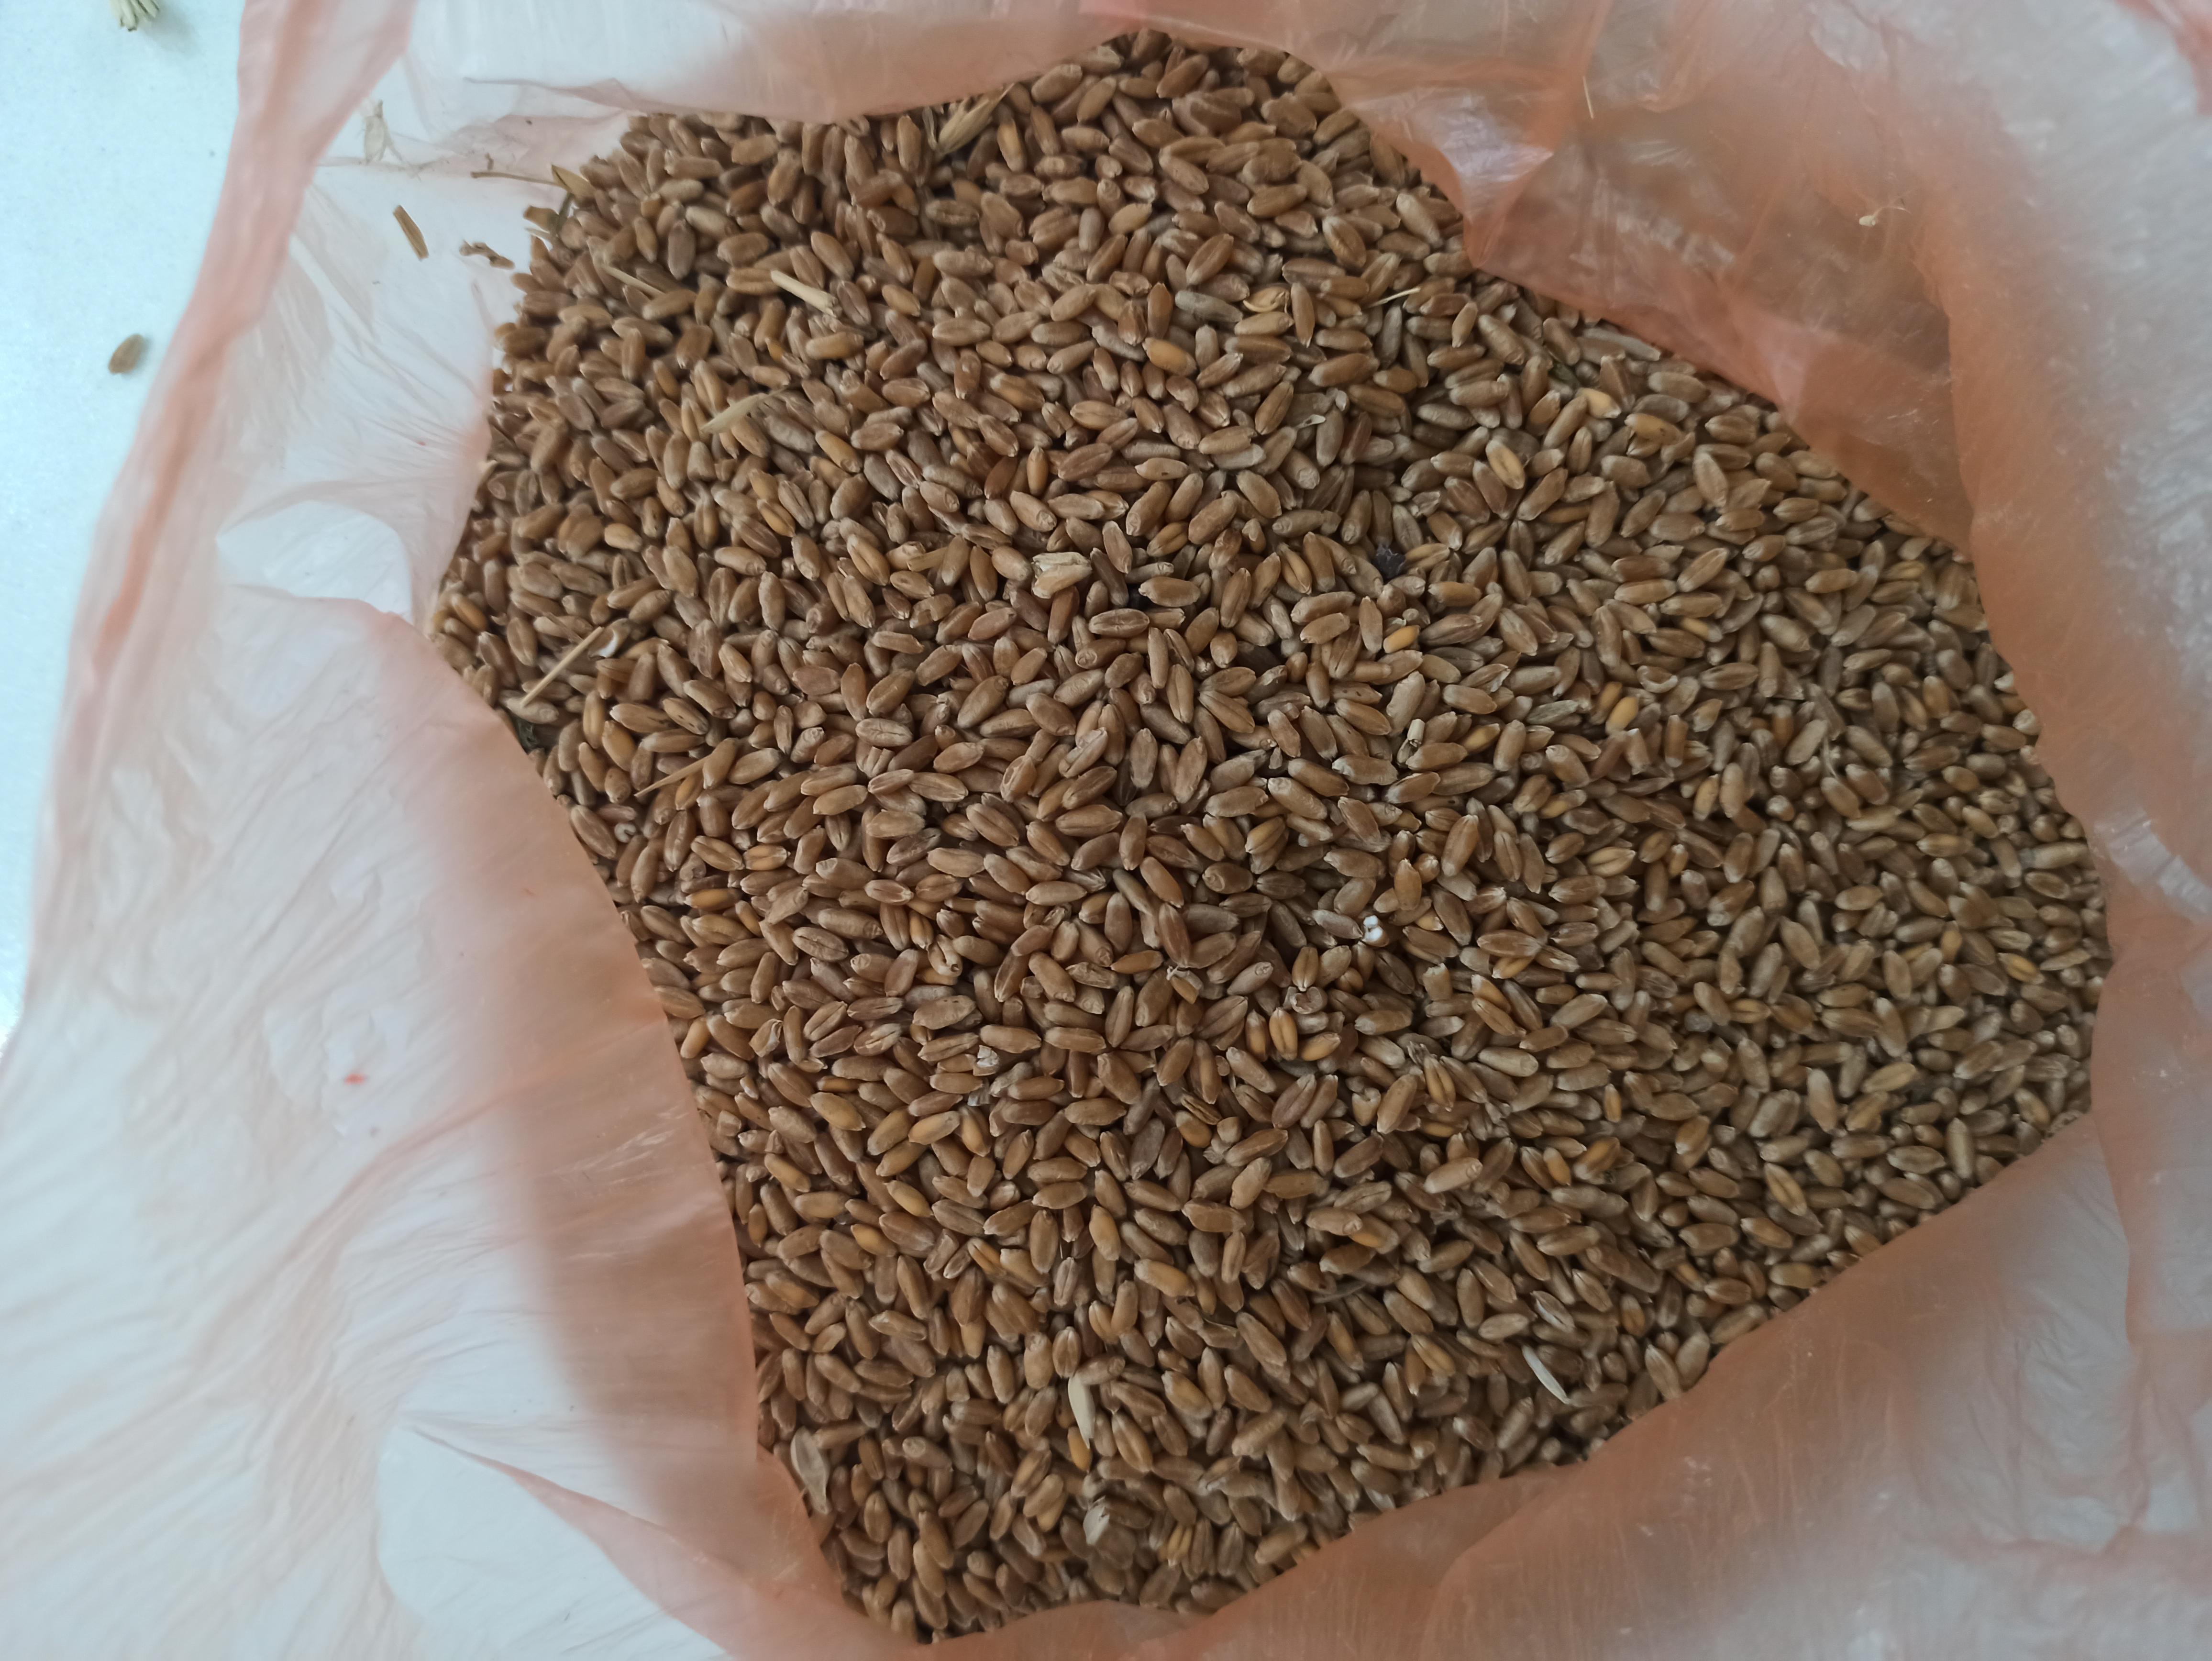 Buğday (Ekmeklik) - Üretici Emre Karaca 6000 tl fiyat ile 50.000 kilogram odeskaya 51 çeşidi buğday (ekmeklik) satmak istiyor